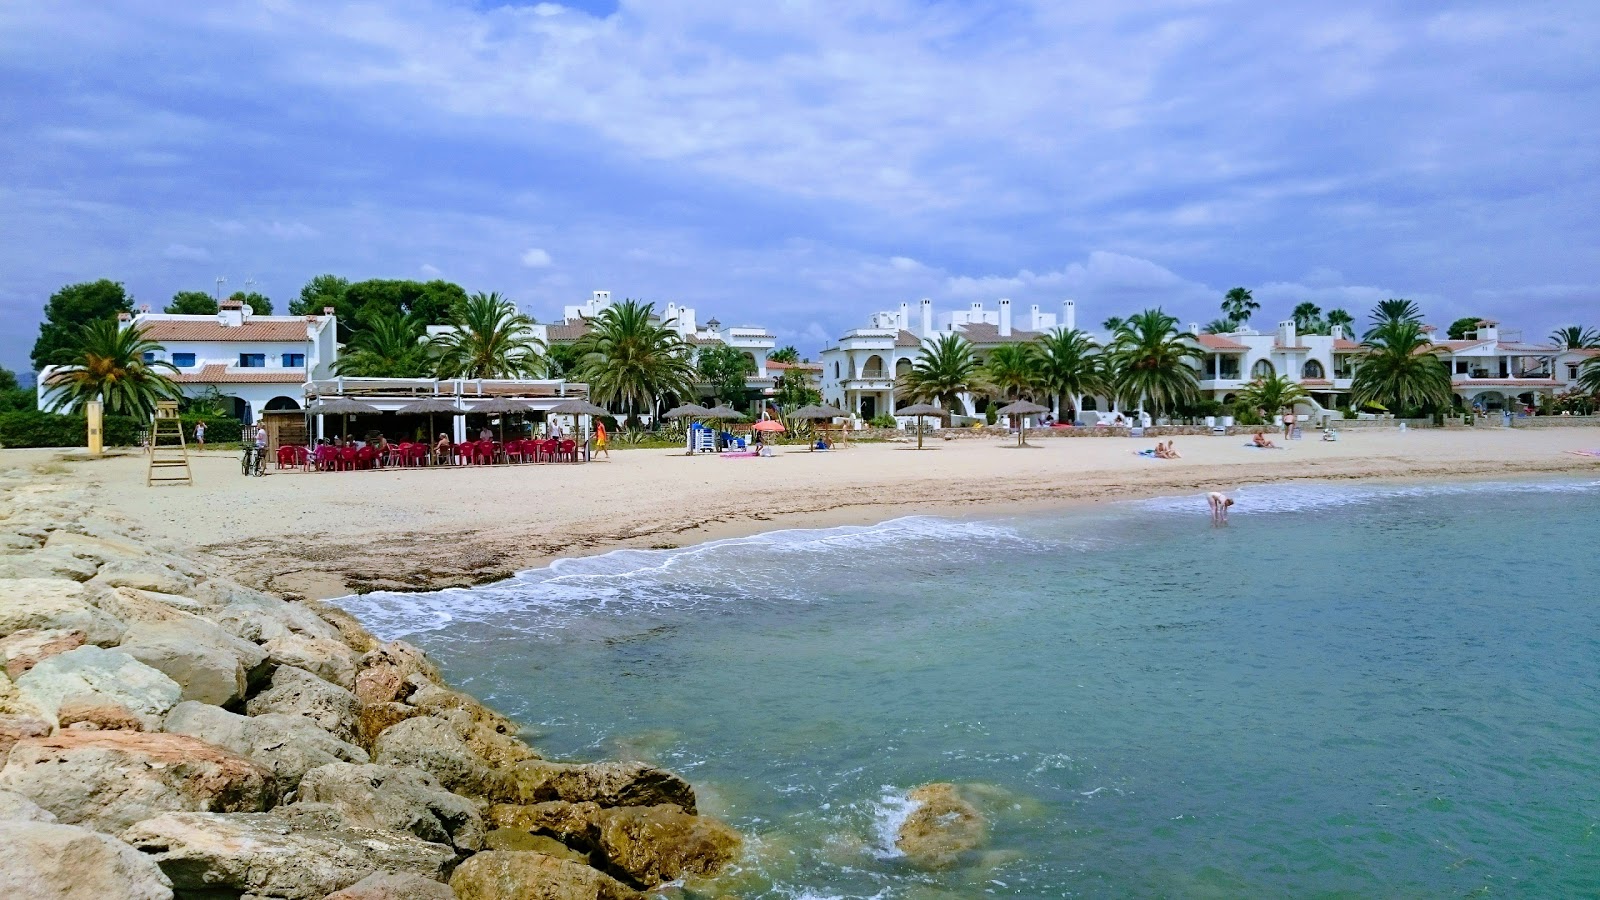 Playa de La Pixerota'in fotoğrafı parlak kum yüzey ile